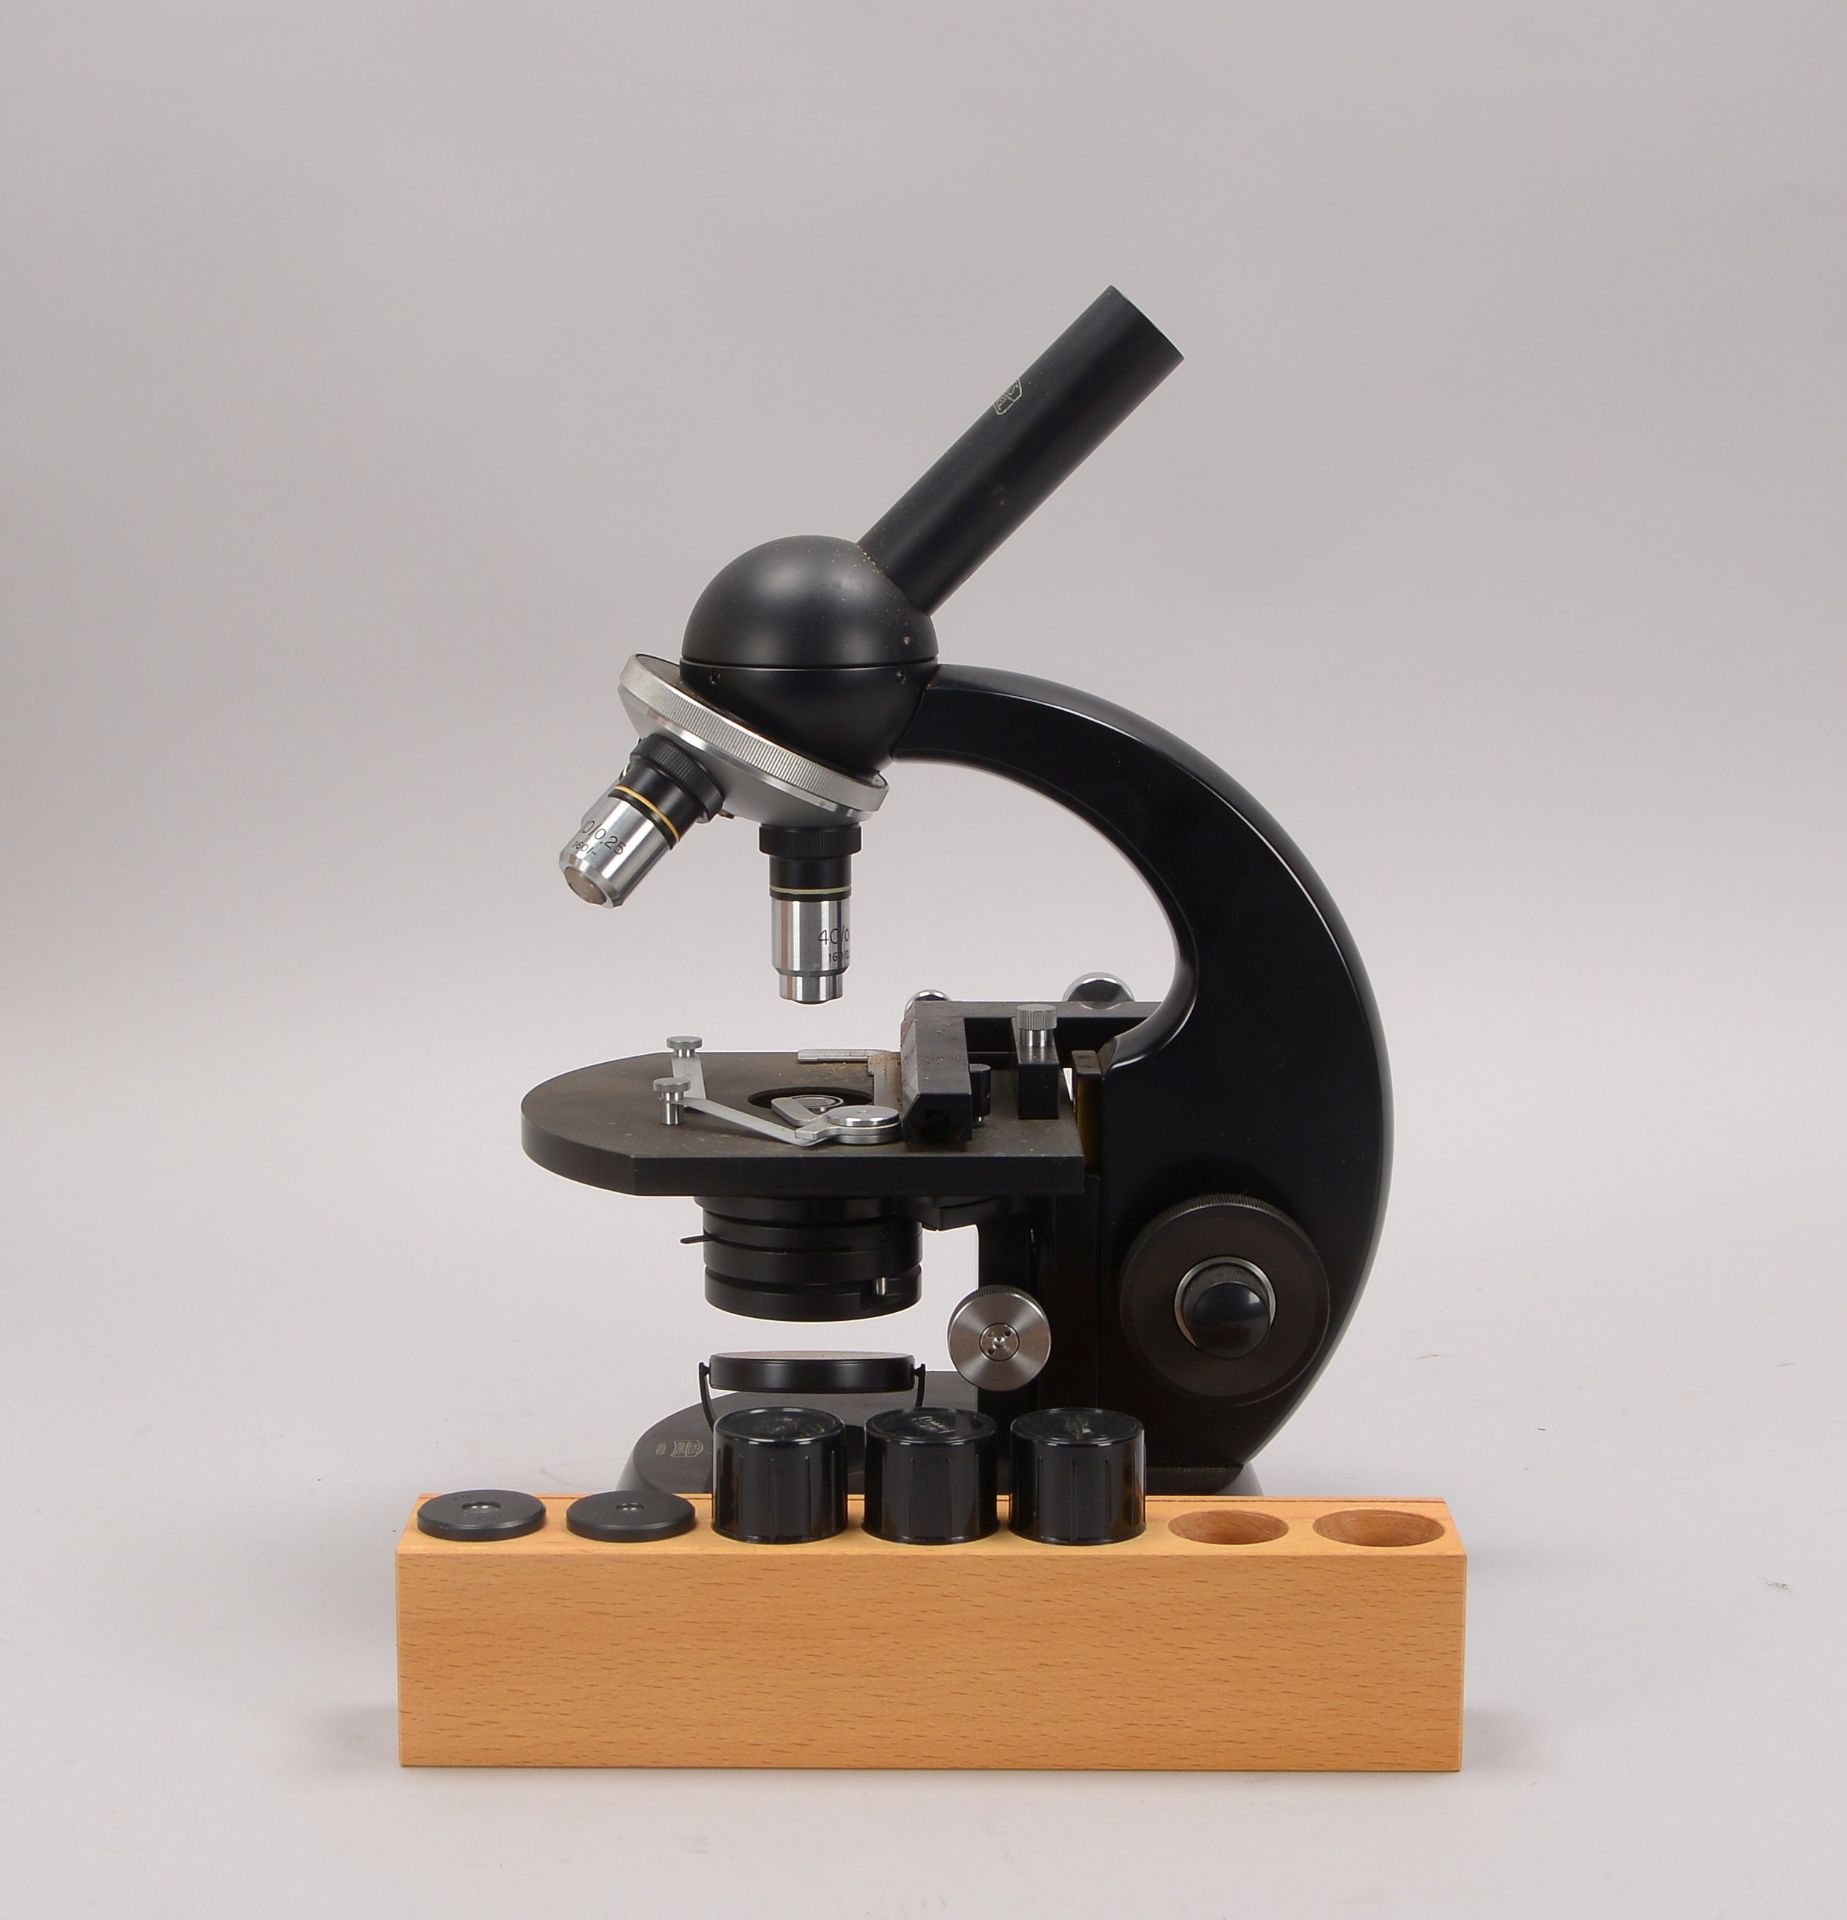 Mikroskop, Zeiss 'Winkel', Nr. '233975', mit verschiedenen Okularen, in Holzkiste - Schlüssel anbei; - Bild 2 aus 3